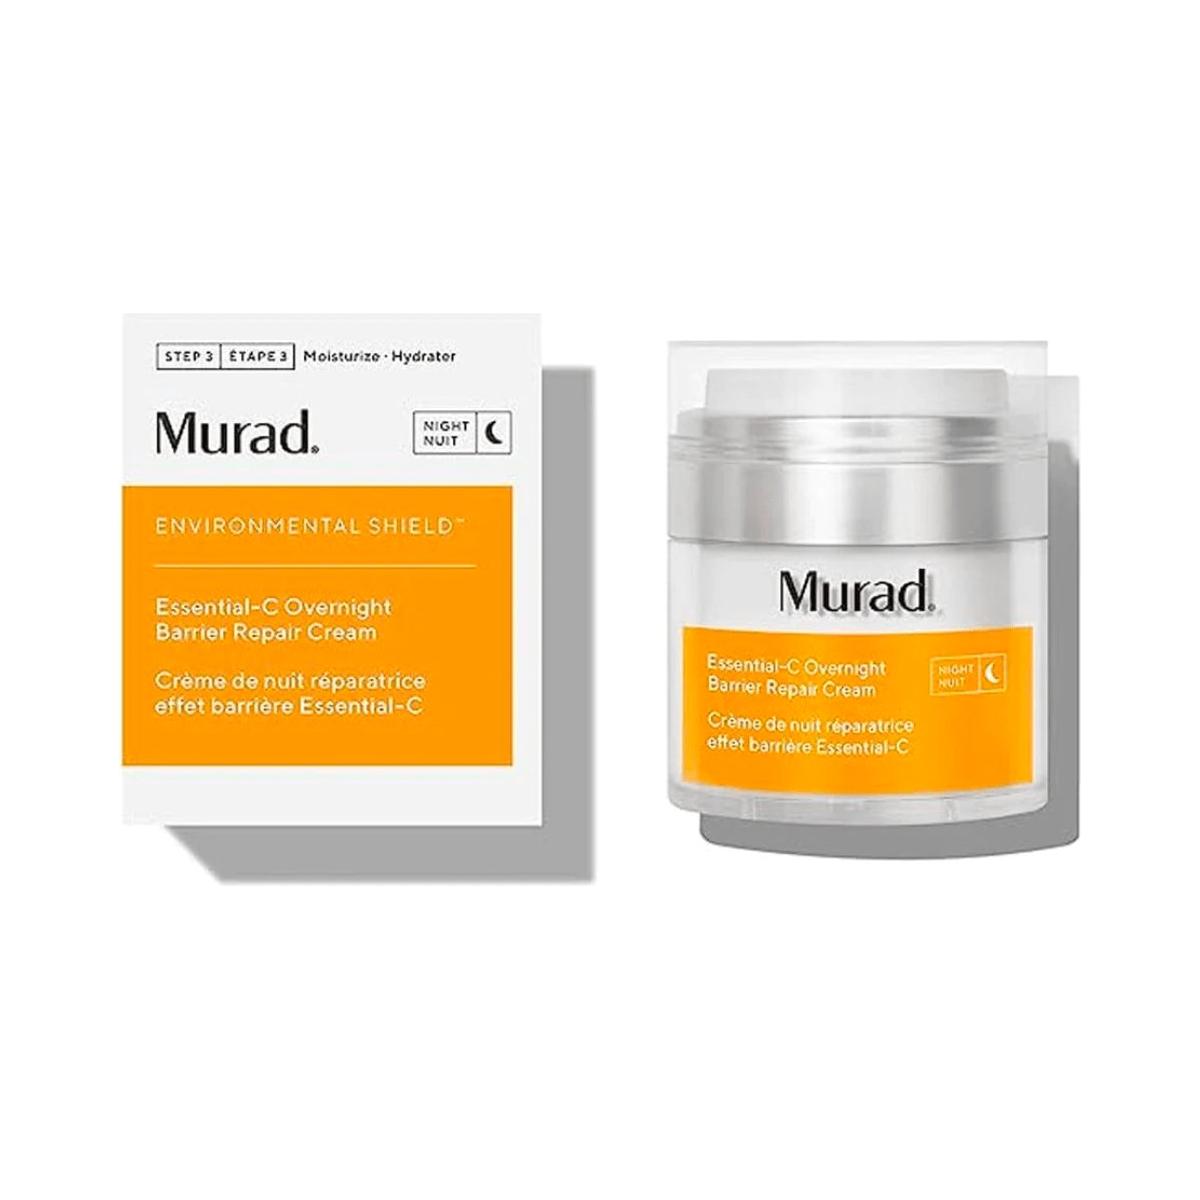 Murad | Essential-C Overnight Barrier Repair Cream | 50ml - DG International Ventures Limited